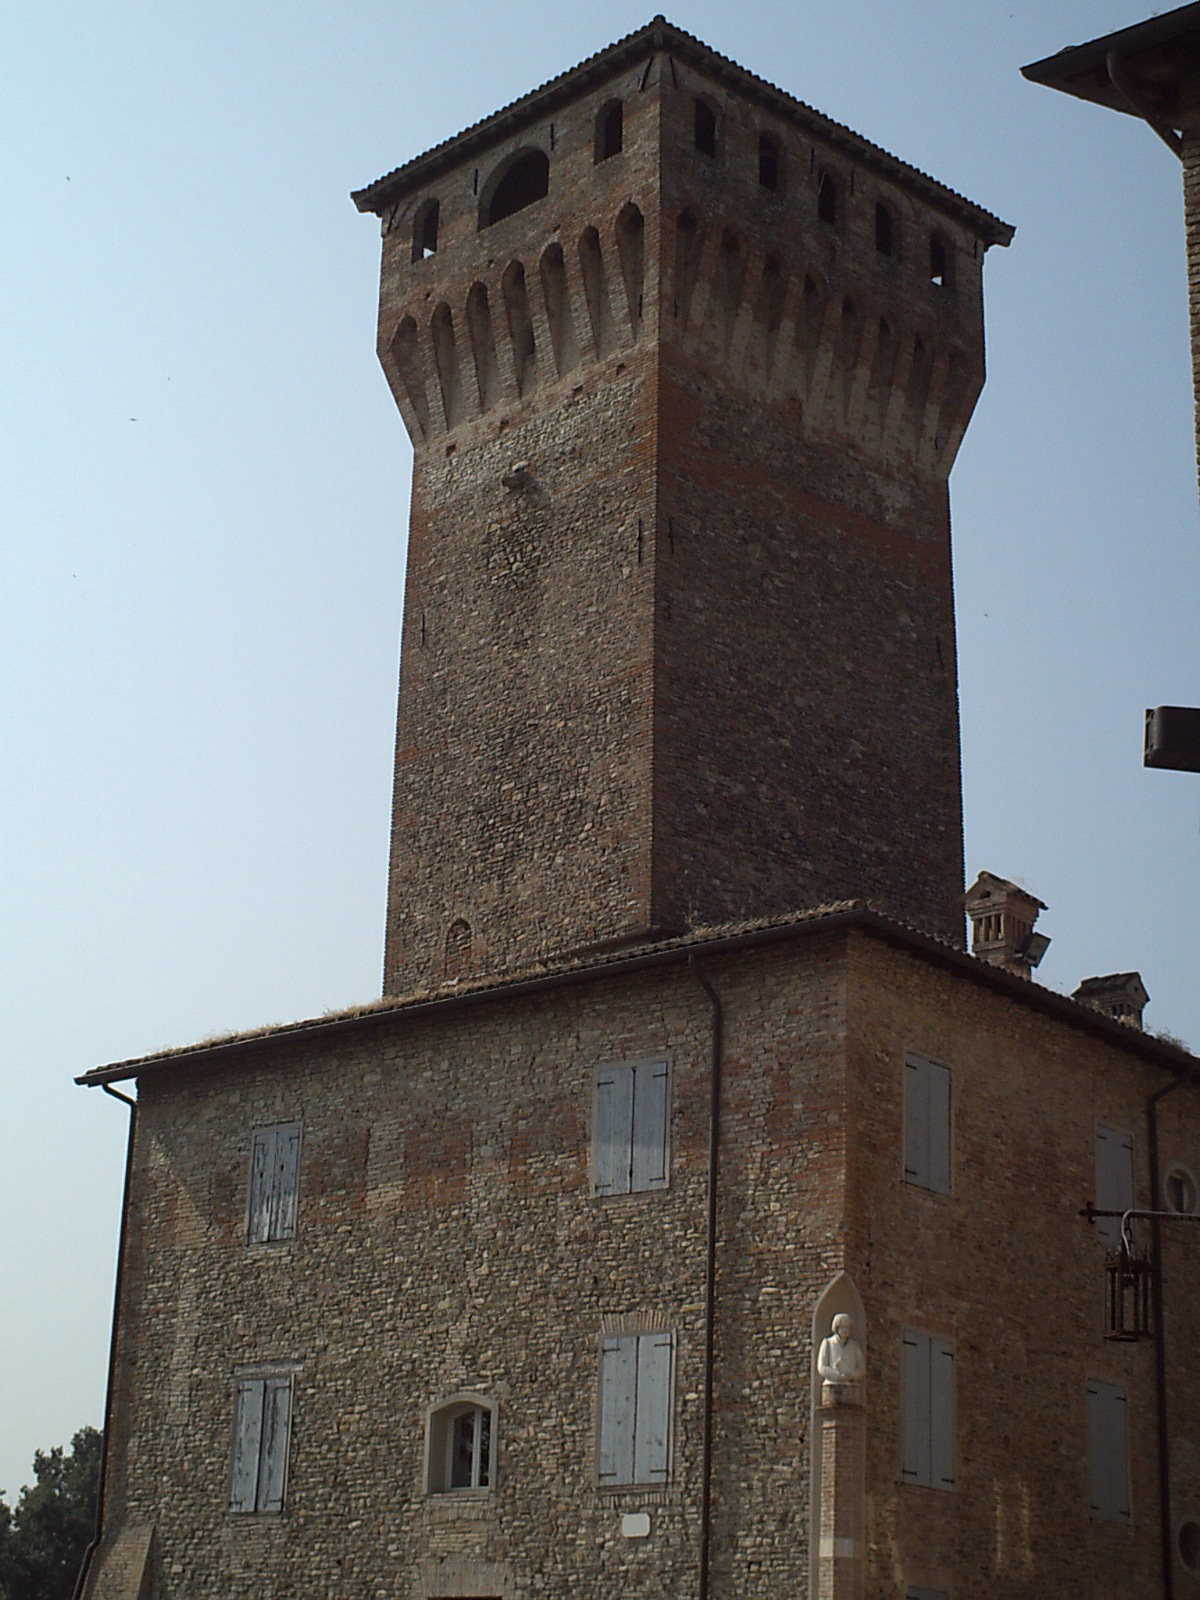 foto: https://upload.wikimedia.org/wikipedia/commons/7/7f/Rocca_e_torre_dal_lato_nord.JPG